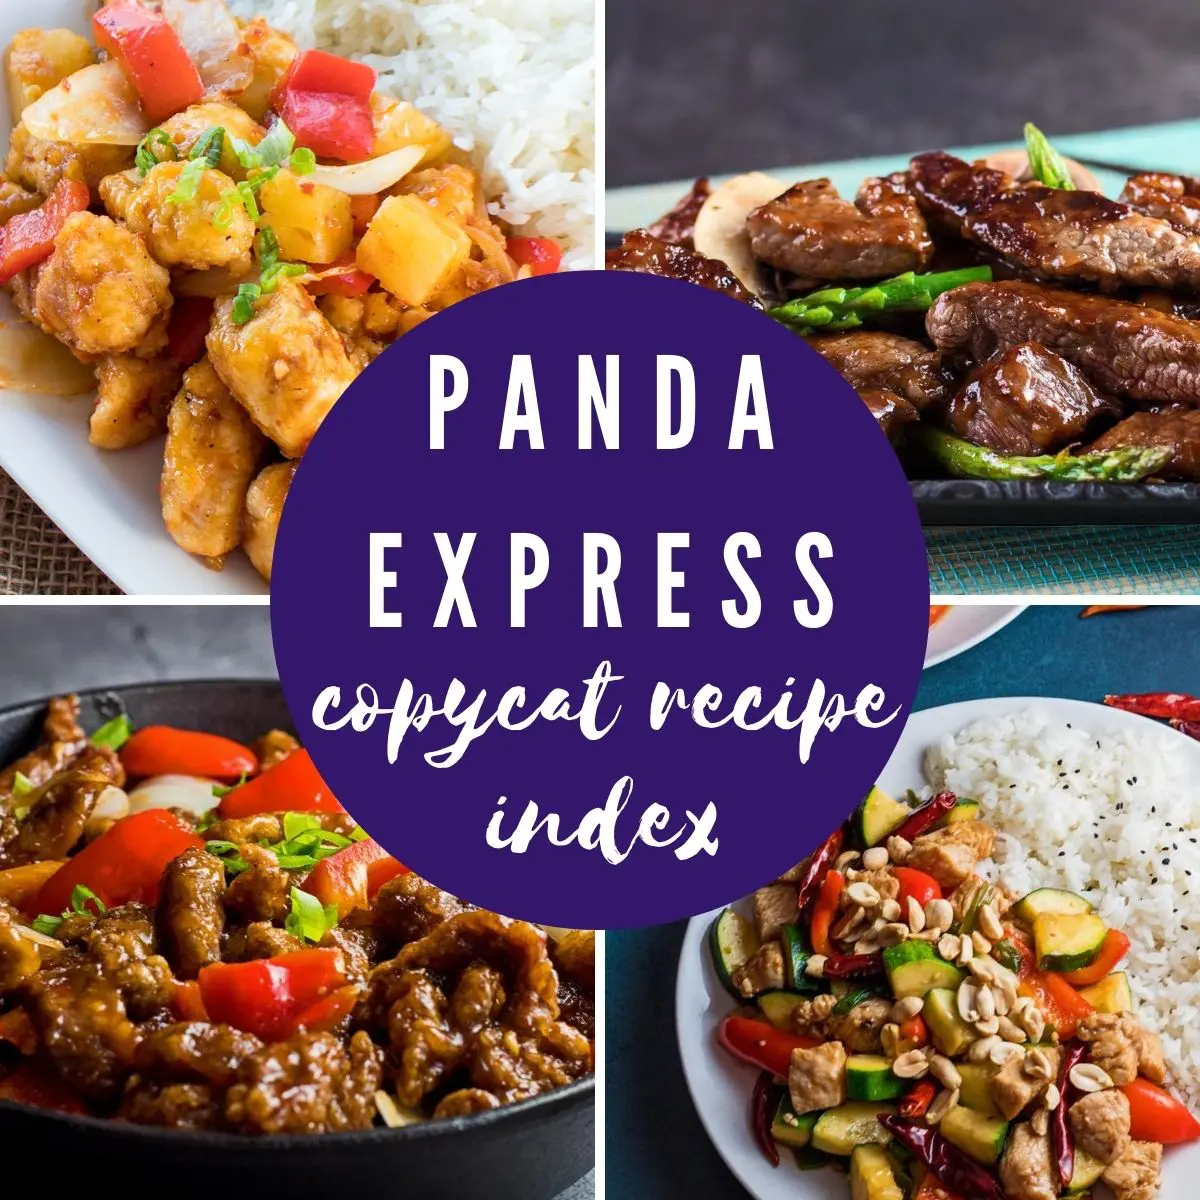 صورة مجمعة من أربع صور لوصفة الباندا السريعة مع طبقة حمراء شفافة من الطوب لعنوان النص "فهرس وصفة Panda Express المقلد"